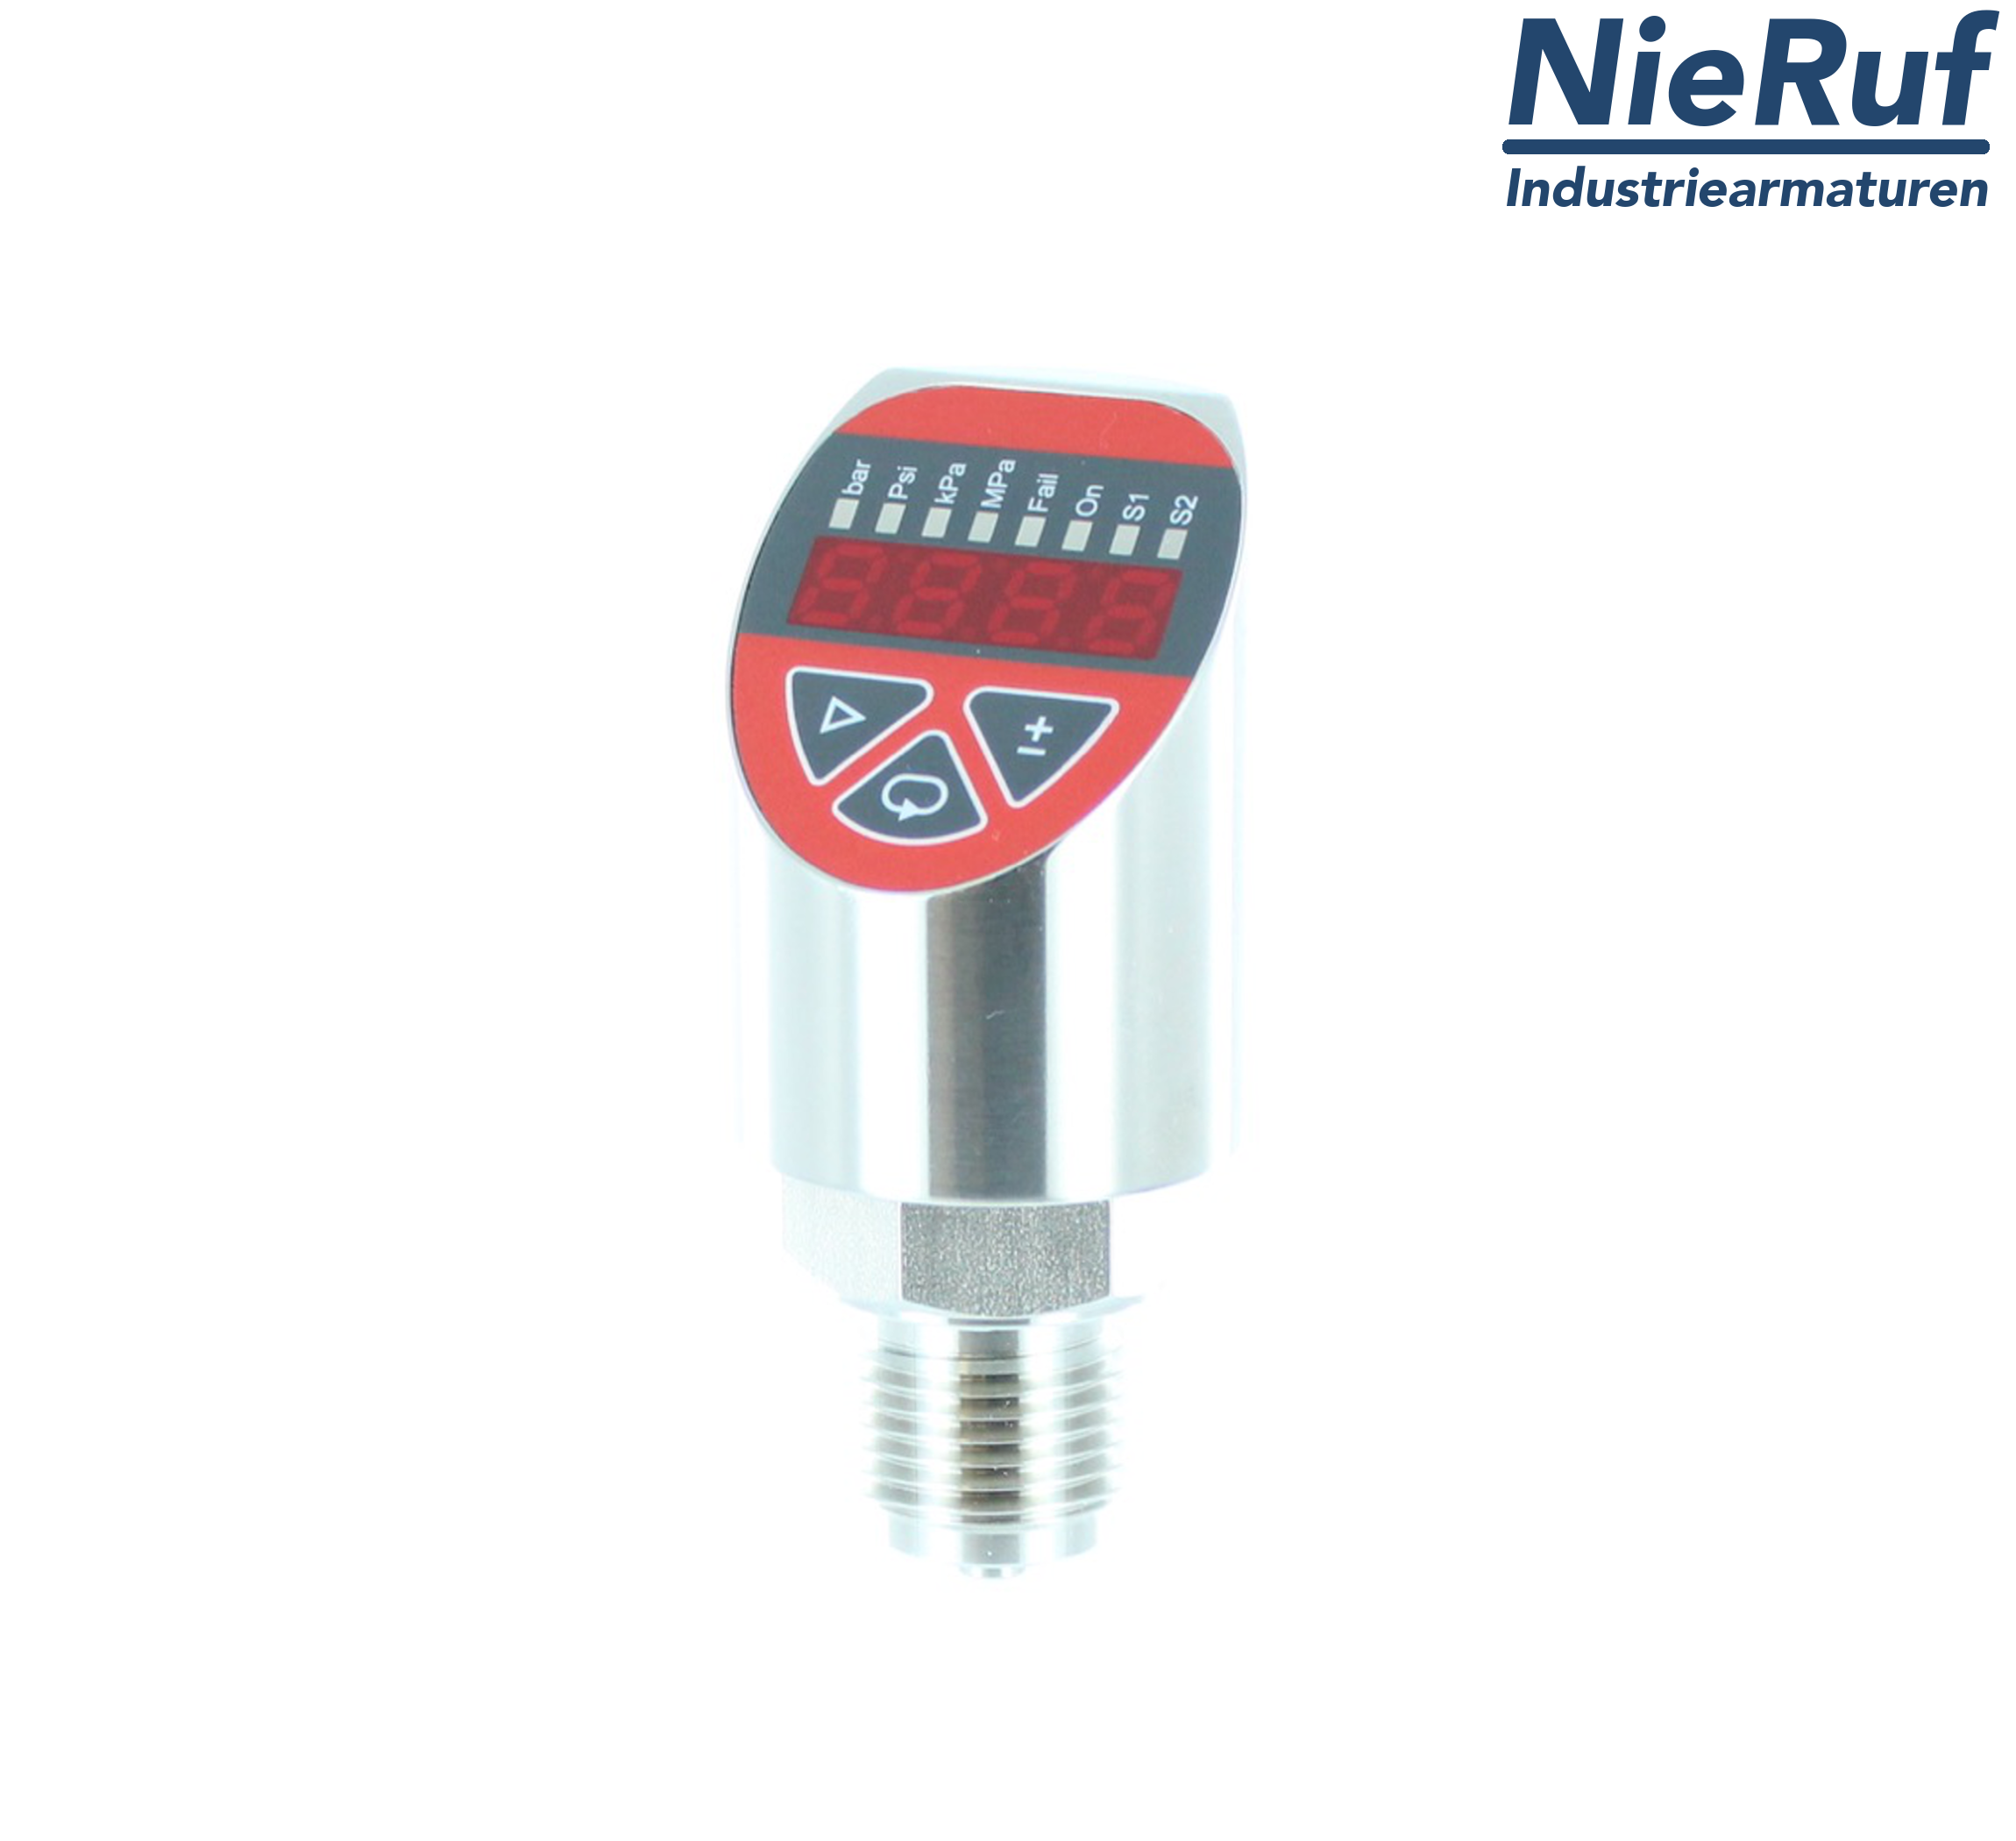 digital pressure sensor G 1/4" B 5-wire: 2xPNP, 1x4 - 20mA FPM 0,0 - 250,0 bar